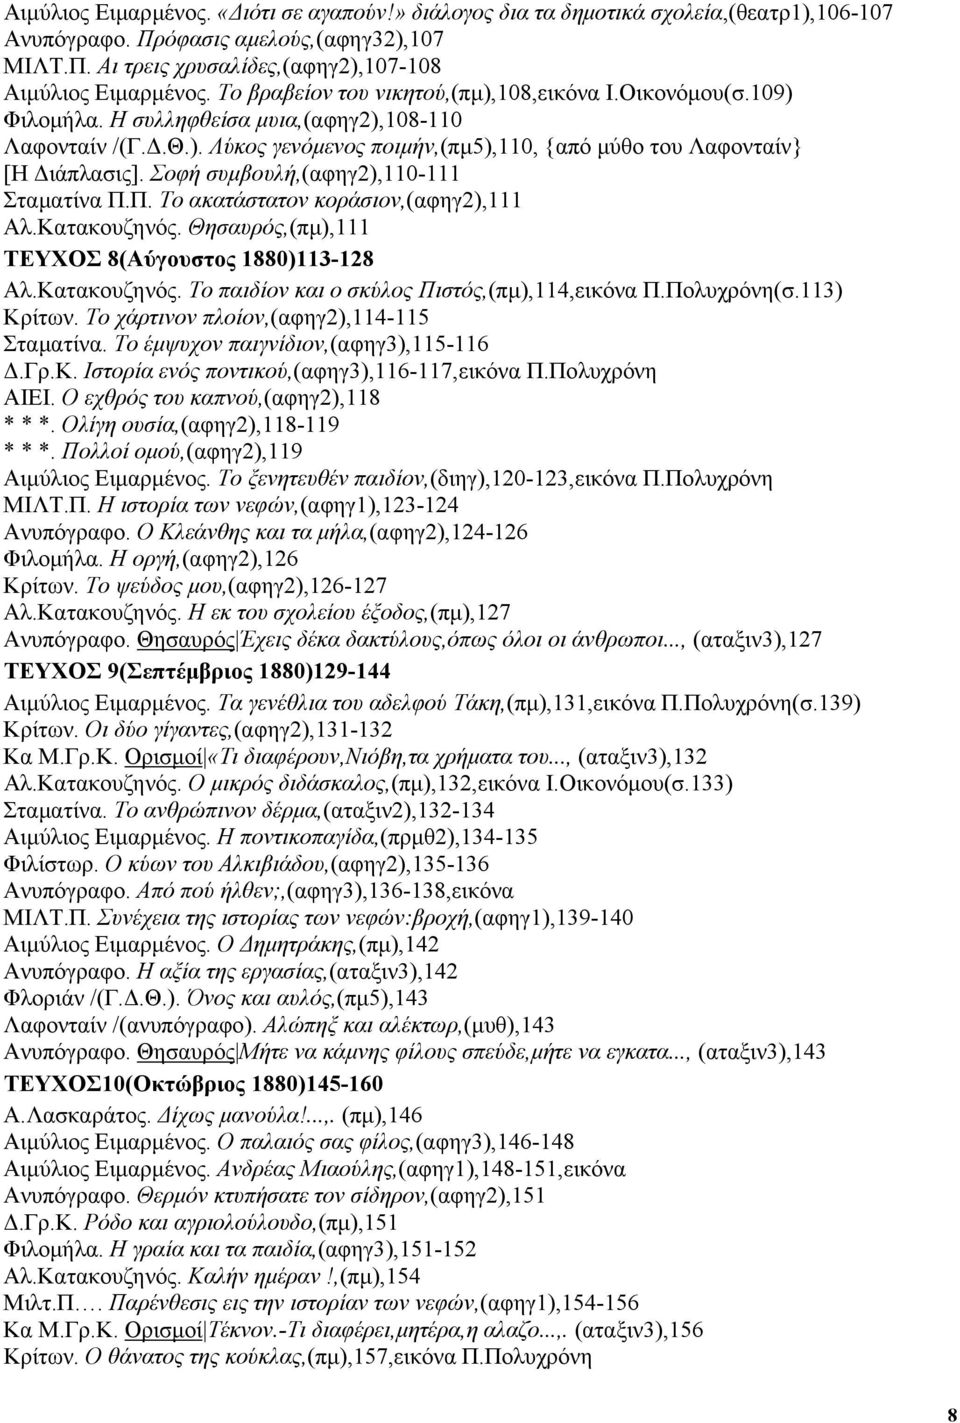 Σοφή συµβουλή,(αφηγ2),110-111 Σταµατίνα Π.Π. Το ακατάστατον κοράσιον,(αφηγ2),111 Αλ.Κατακουζηνός. Θησαυρός,(πµ),111 ΤΕΥΧΟΣ 8(Αύγουστος 1880)113-128 Αλ.Κατακουζηνός. Το παιδίον και ο σκύλος Πιστός,(πµ),114,εικόνα Π.